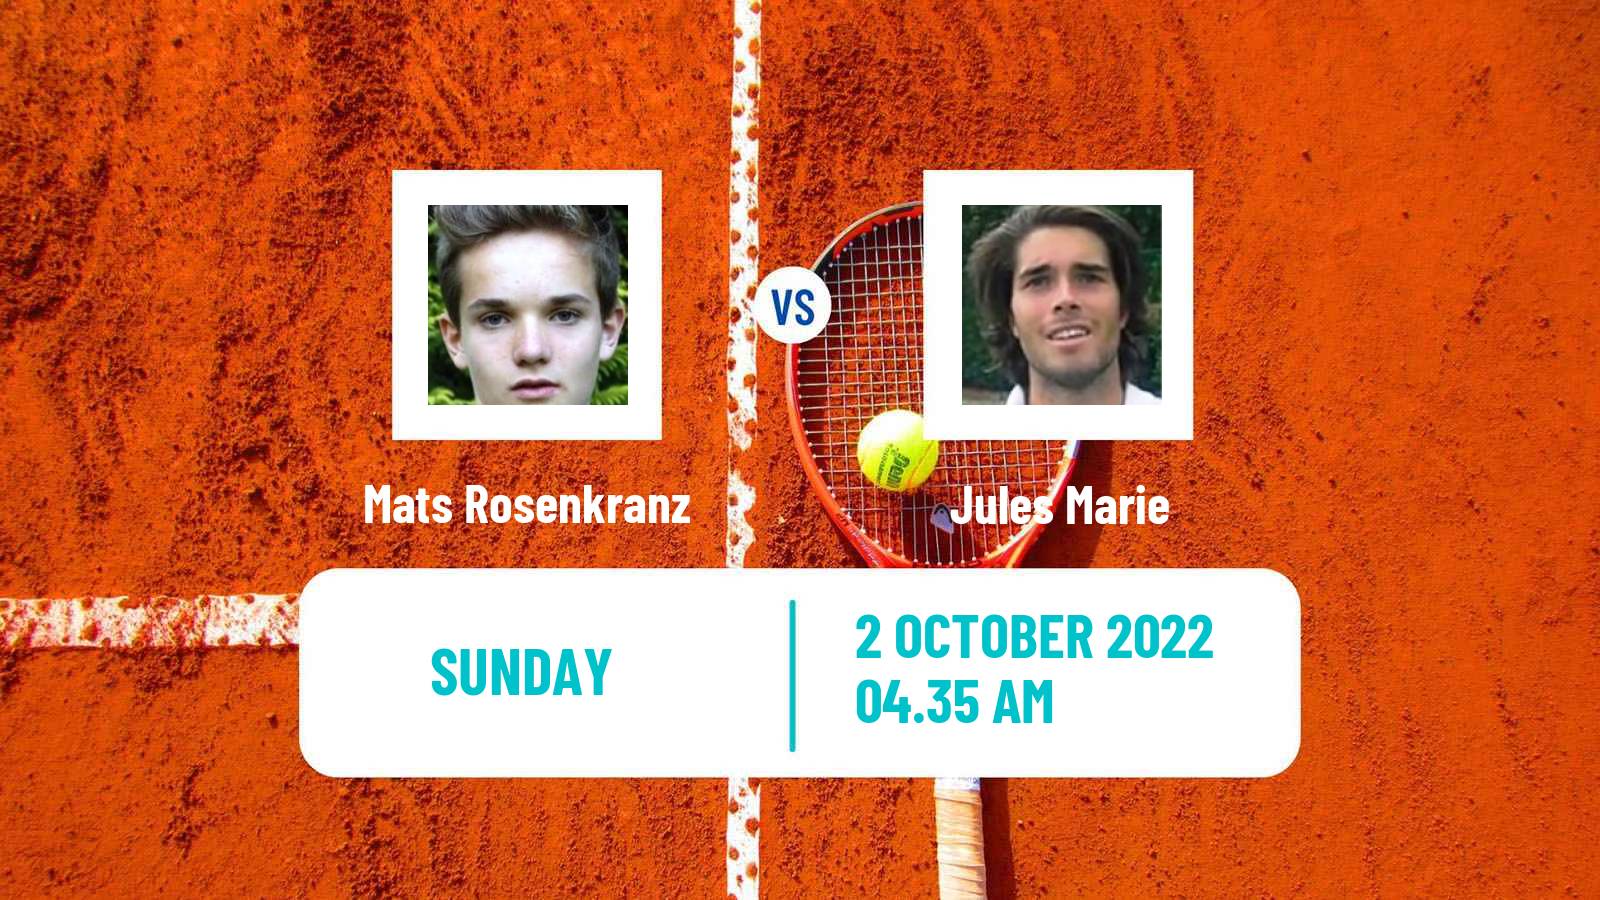 Tennis ATP Challenger Mats Rosenkranz - Jules Marie